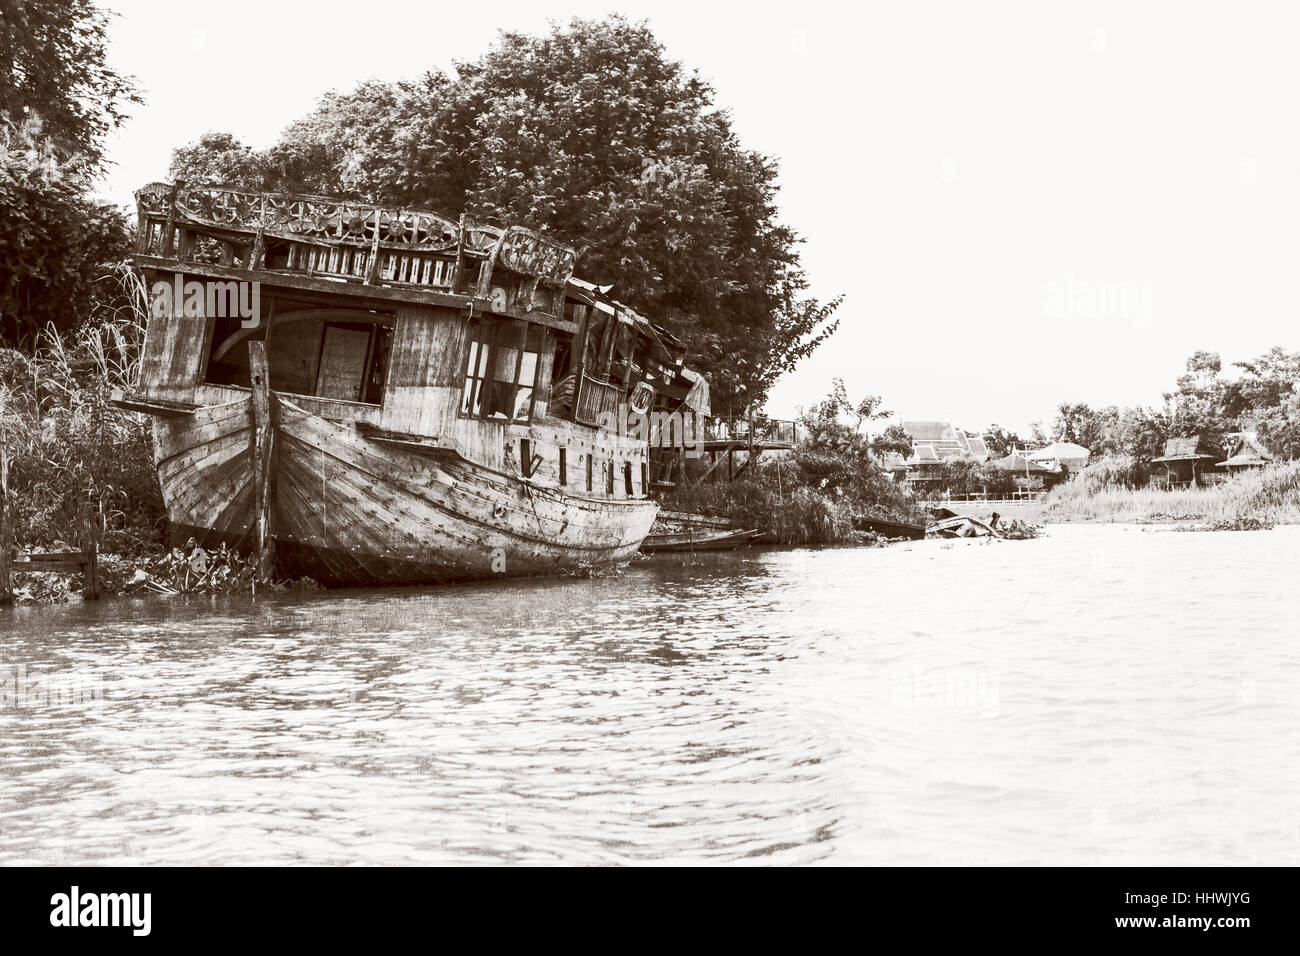 Fotografía en blanco y negro agregar textura vintage estilo del viejo barco de madera dañado varado en la orilla del mar para el fondo en Phra Nakhon Si Ayutthaya Foto de stock